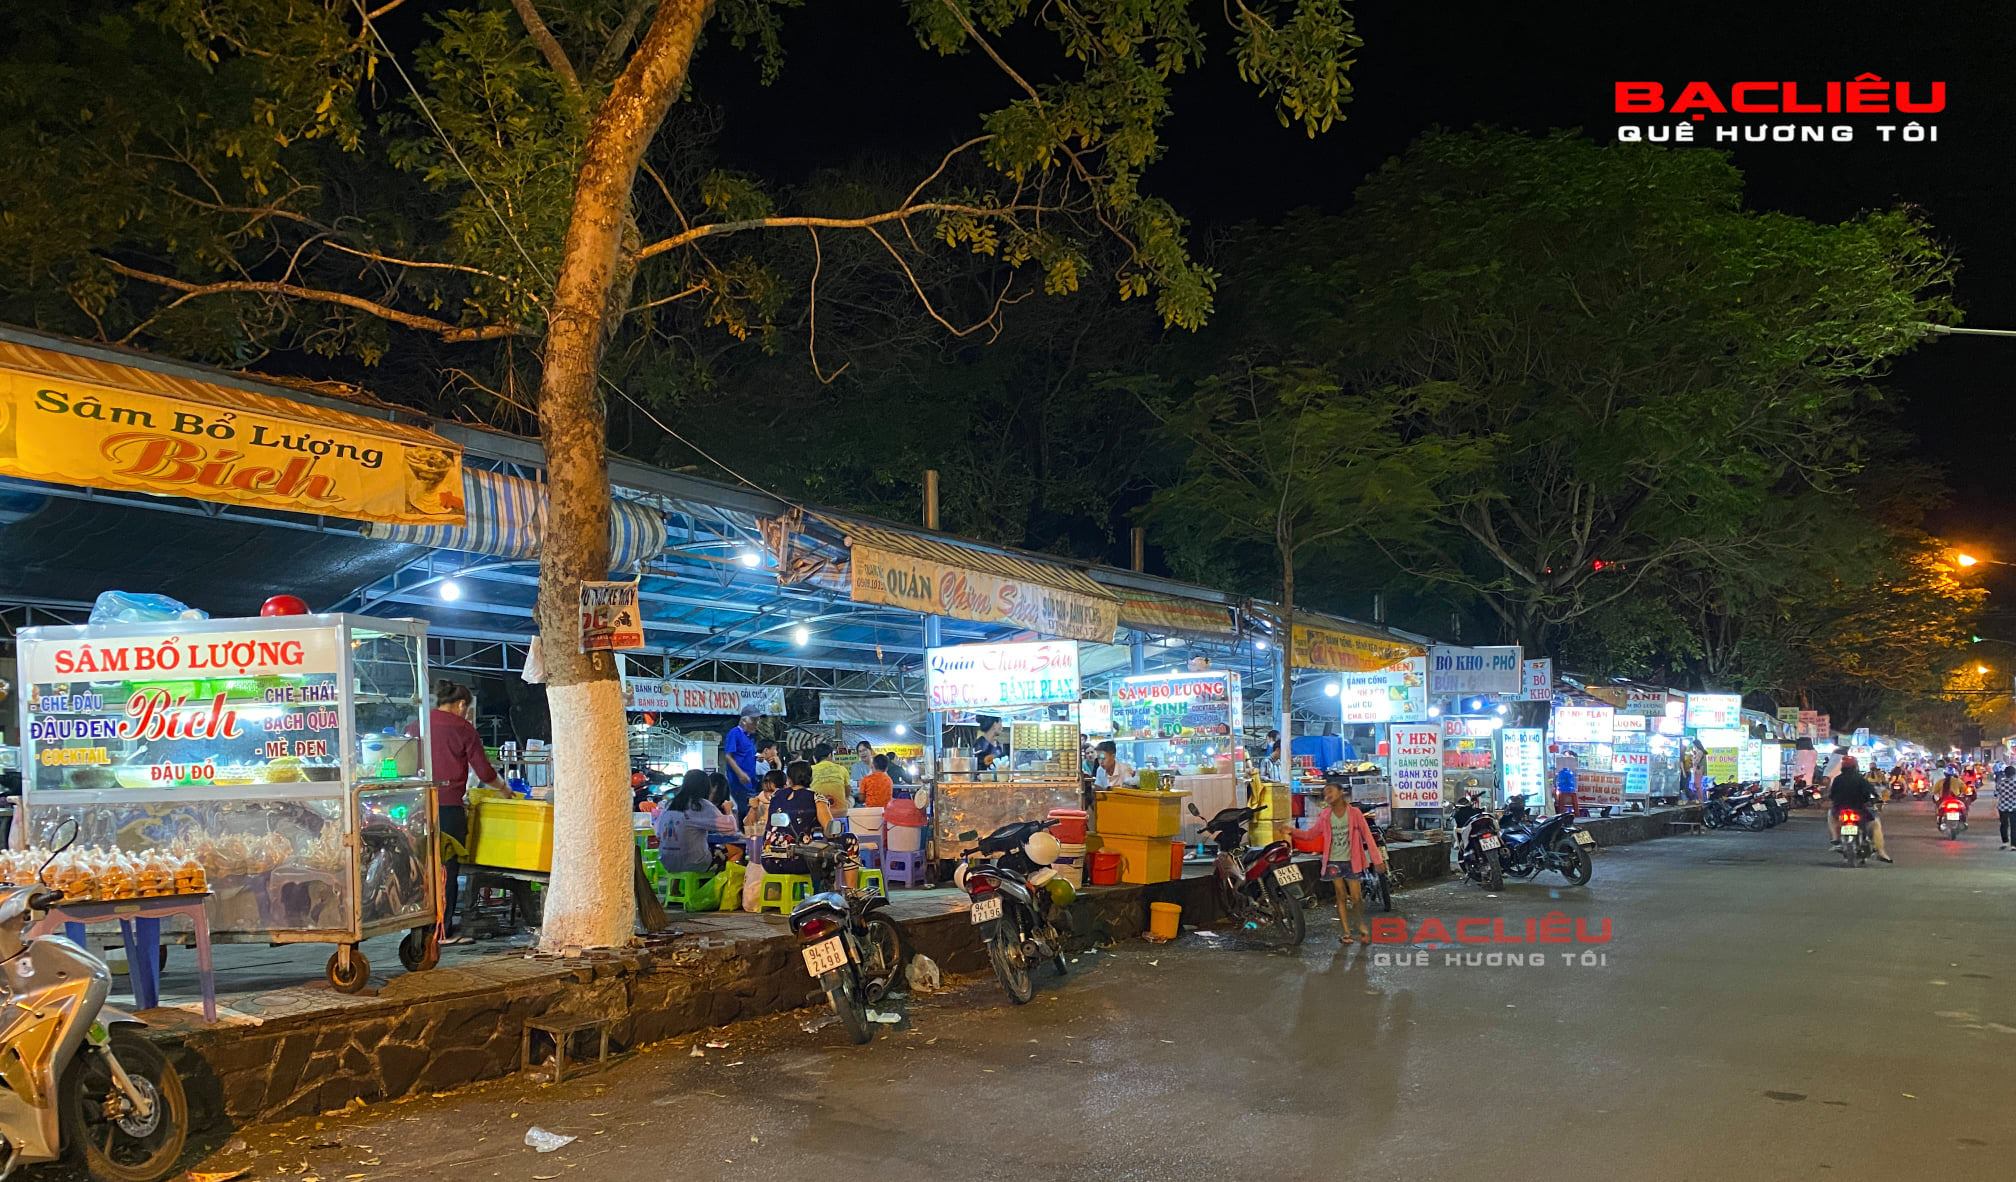 Bac Lieu Night Market - What to Eat & Shop in Bac Lieu